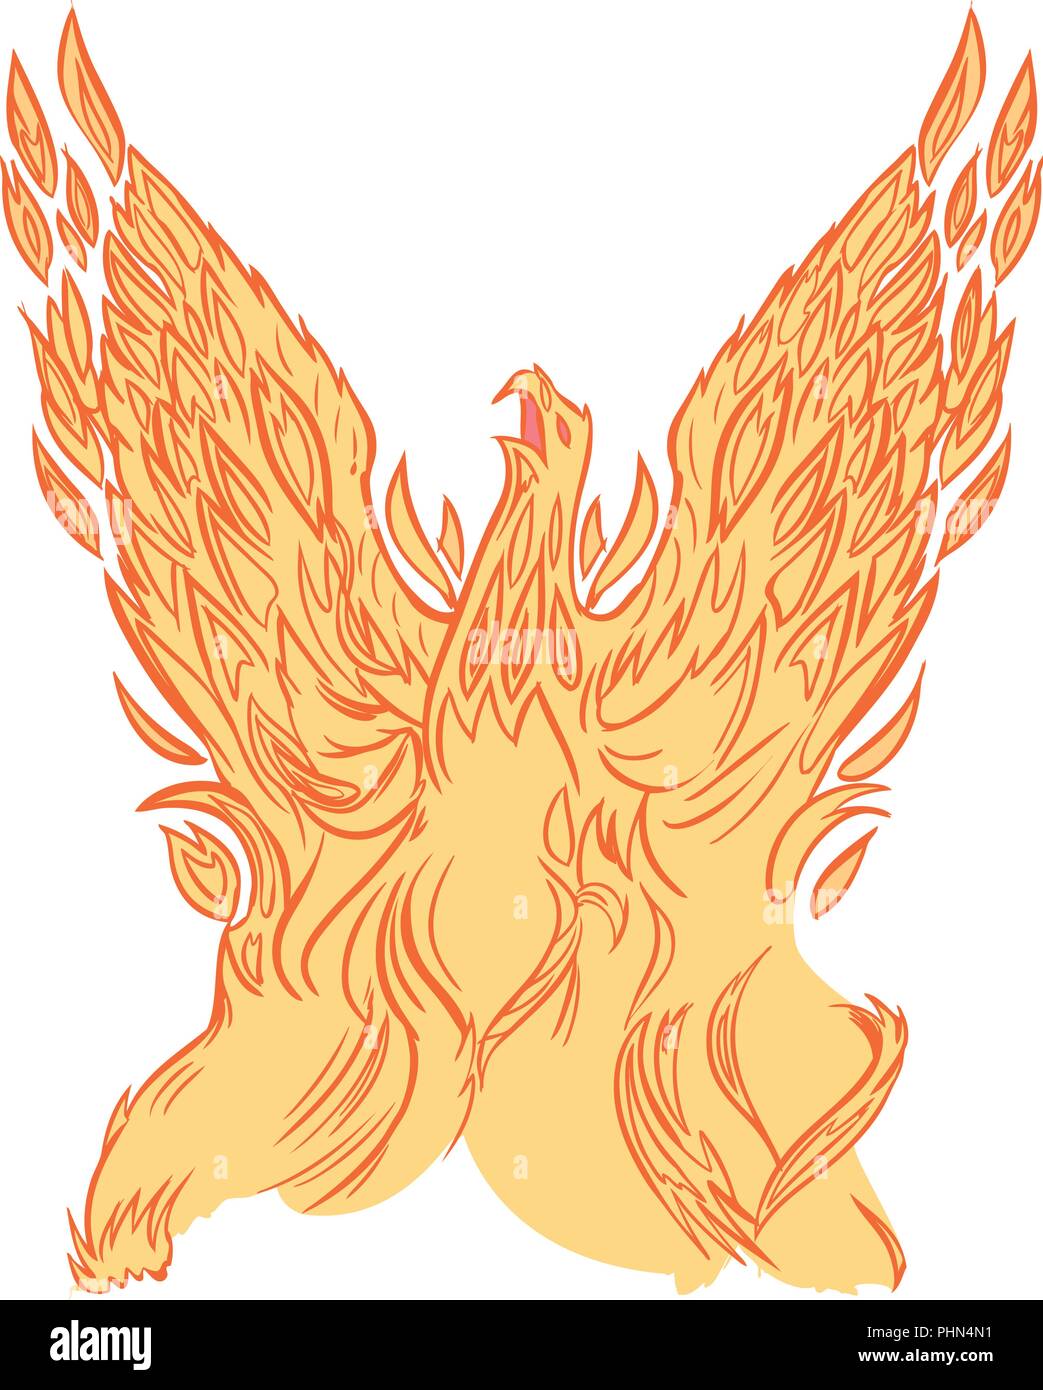 Vector clip art cartoon illustrazione di Phoenix o firebird fatta di incendio o le fiammelle innalzantisi in aria con ali stese. Illustrazione Vettoriale